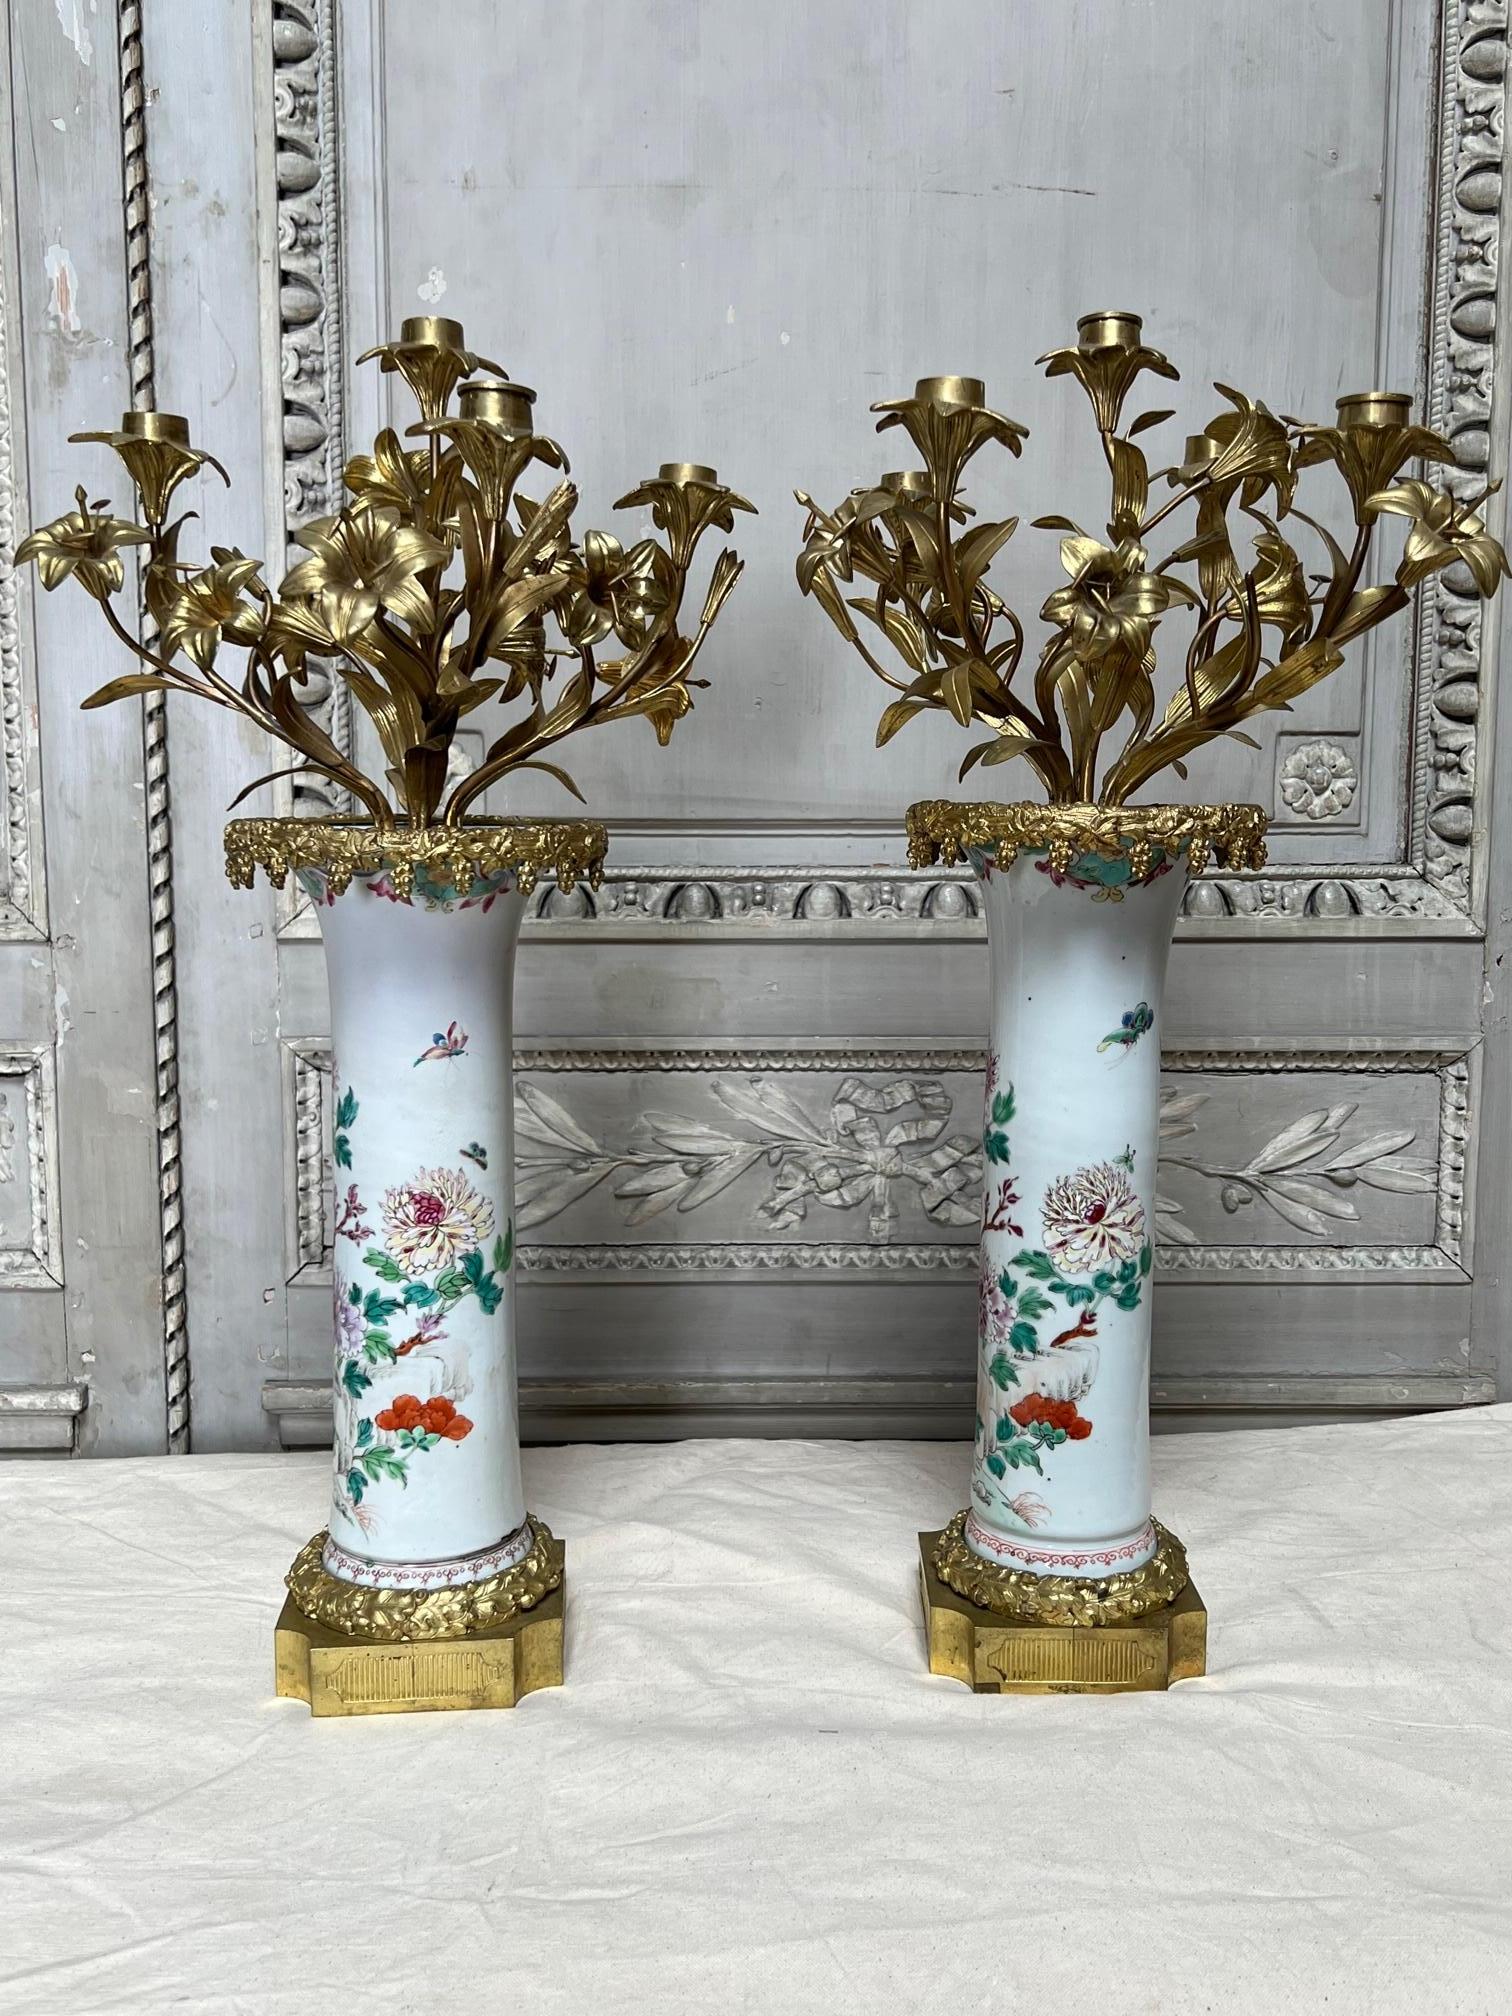 Une paire de candélabres consistant en une paire de vases d'exportation chinois du 18ème siècle montés en bronze français du 19ème siècle dans le style Louis XVI. Les porcelaines sont très décoratives et présentent quelques dommages sous les